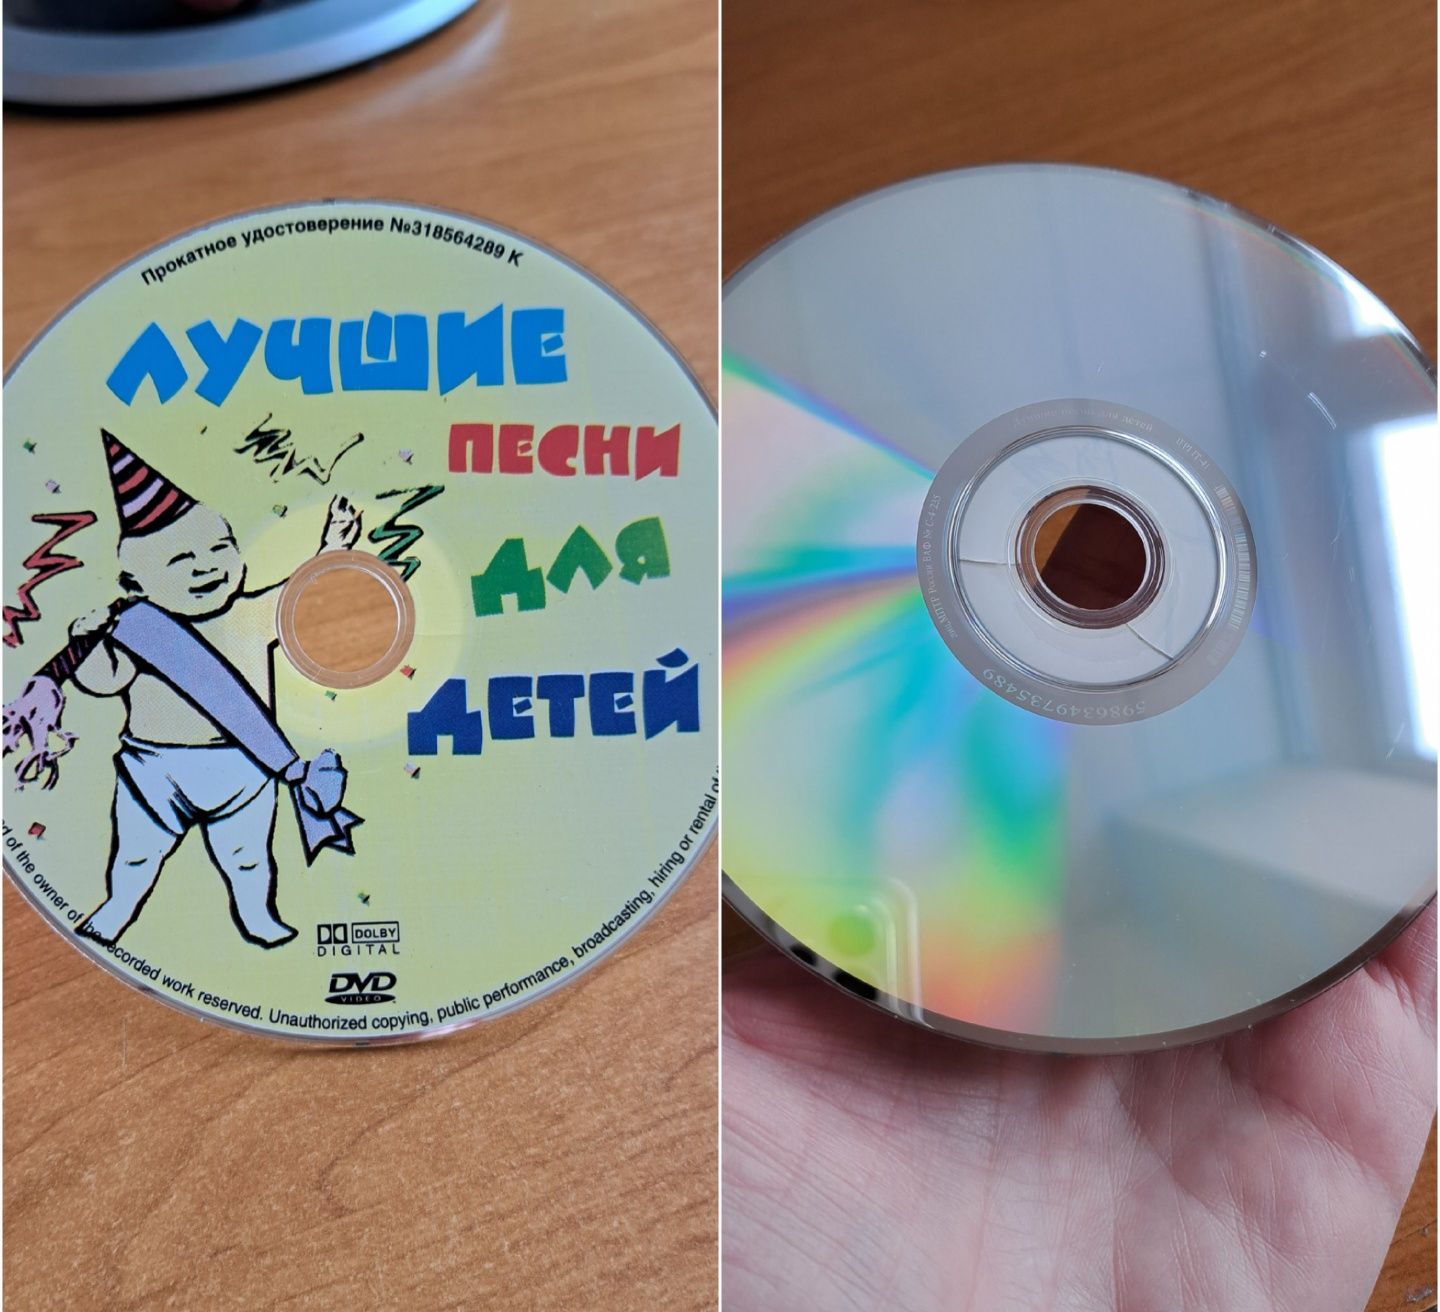 Дитяче Караоке - DVD диск 90 пісень з радянських фільмів та мультиків